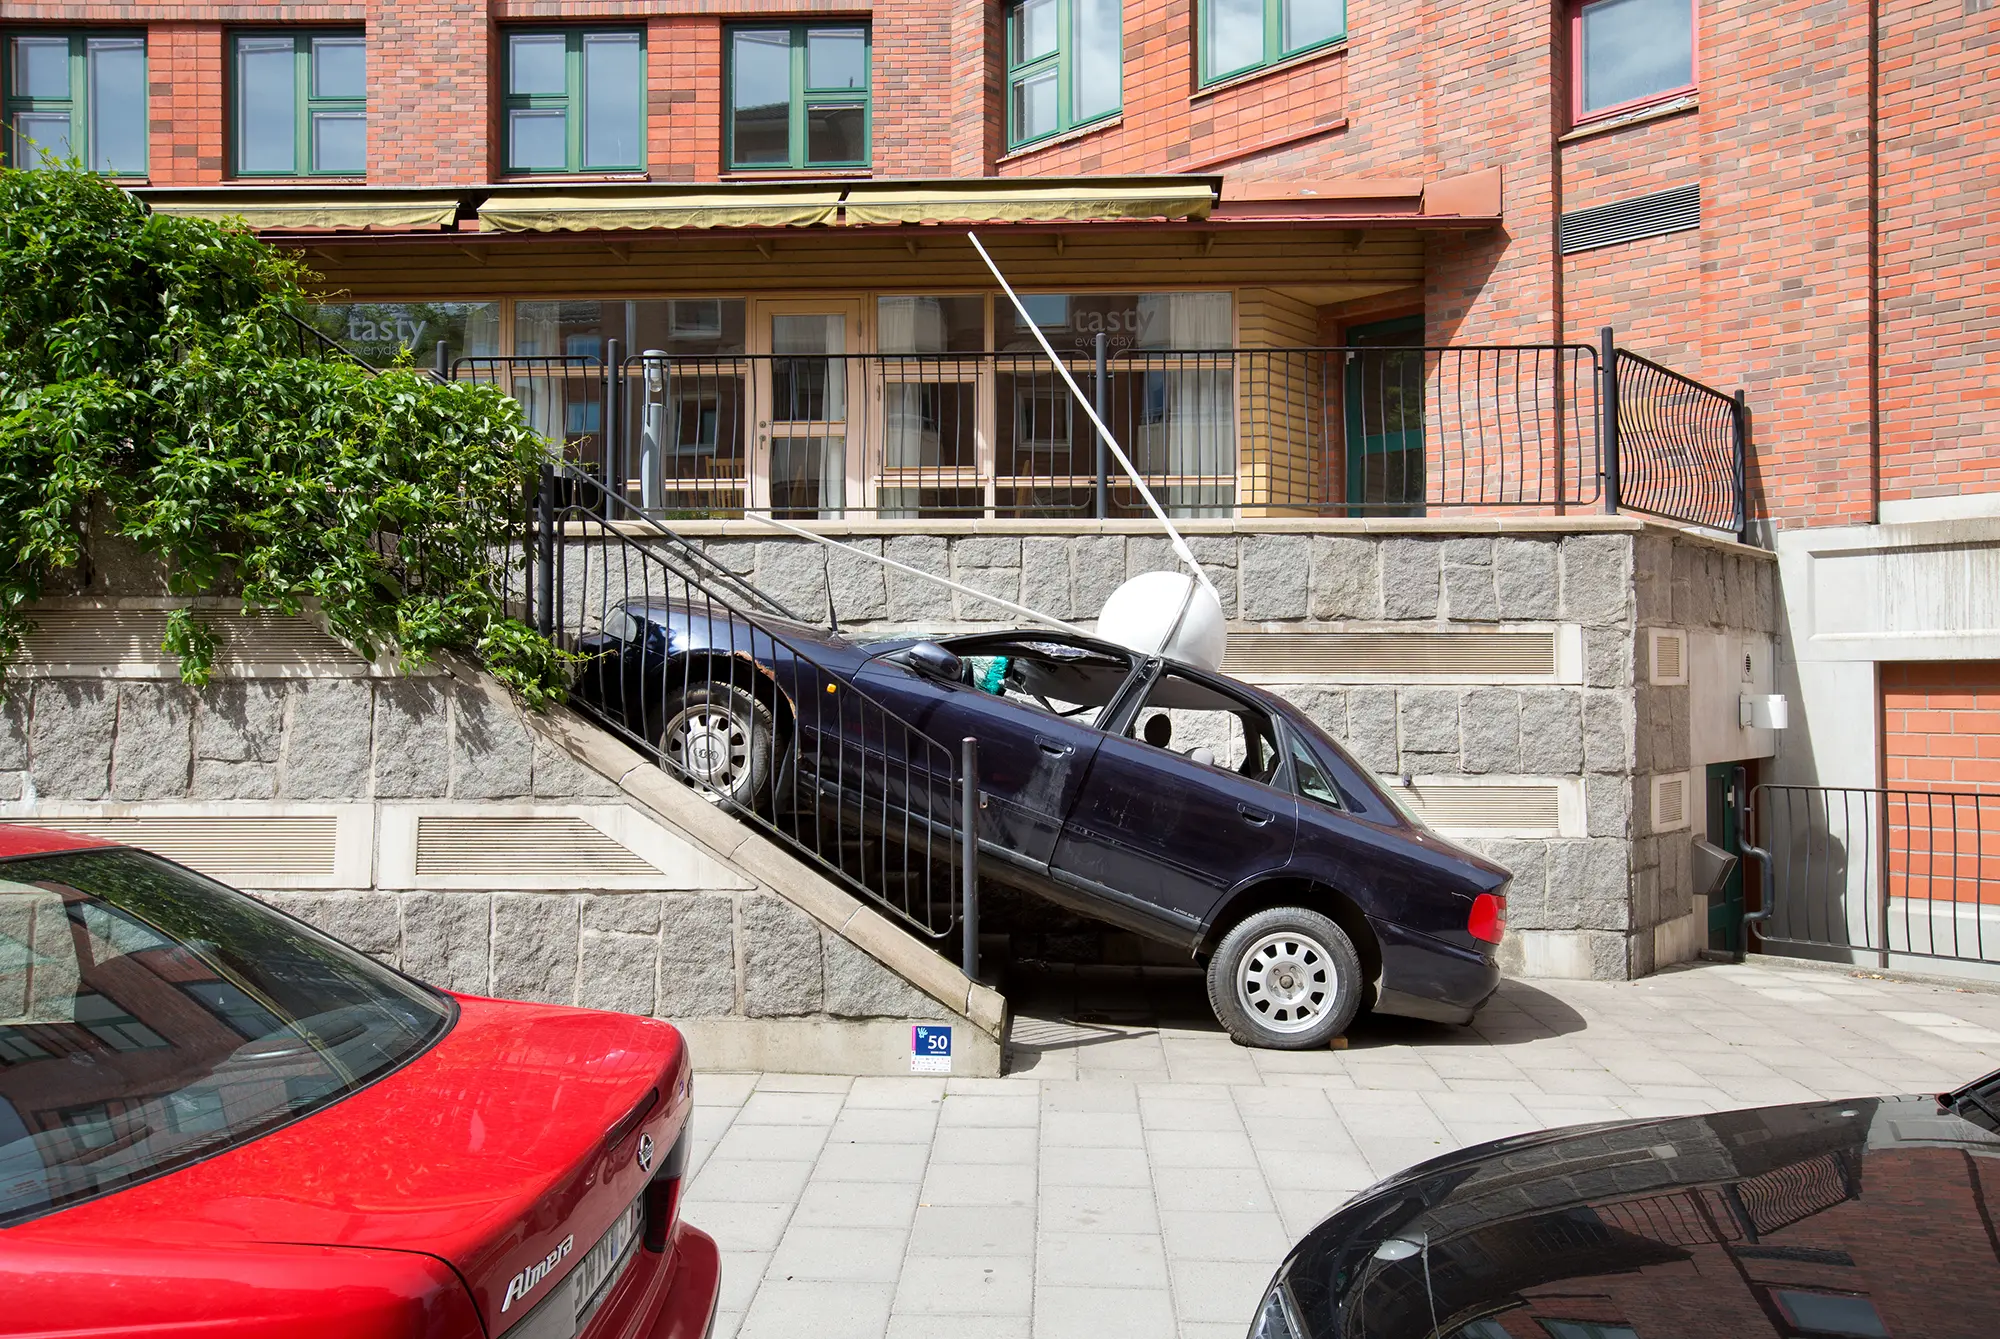 En sliten mörkblå bil står uppställd lutande på en trappa. Framhjulen står på trappan och bakhjulen står på marken. På bilens tak finns en vit klotformad skulptur med två vita pinnar vinklade framåt.